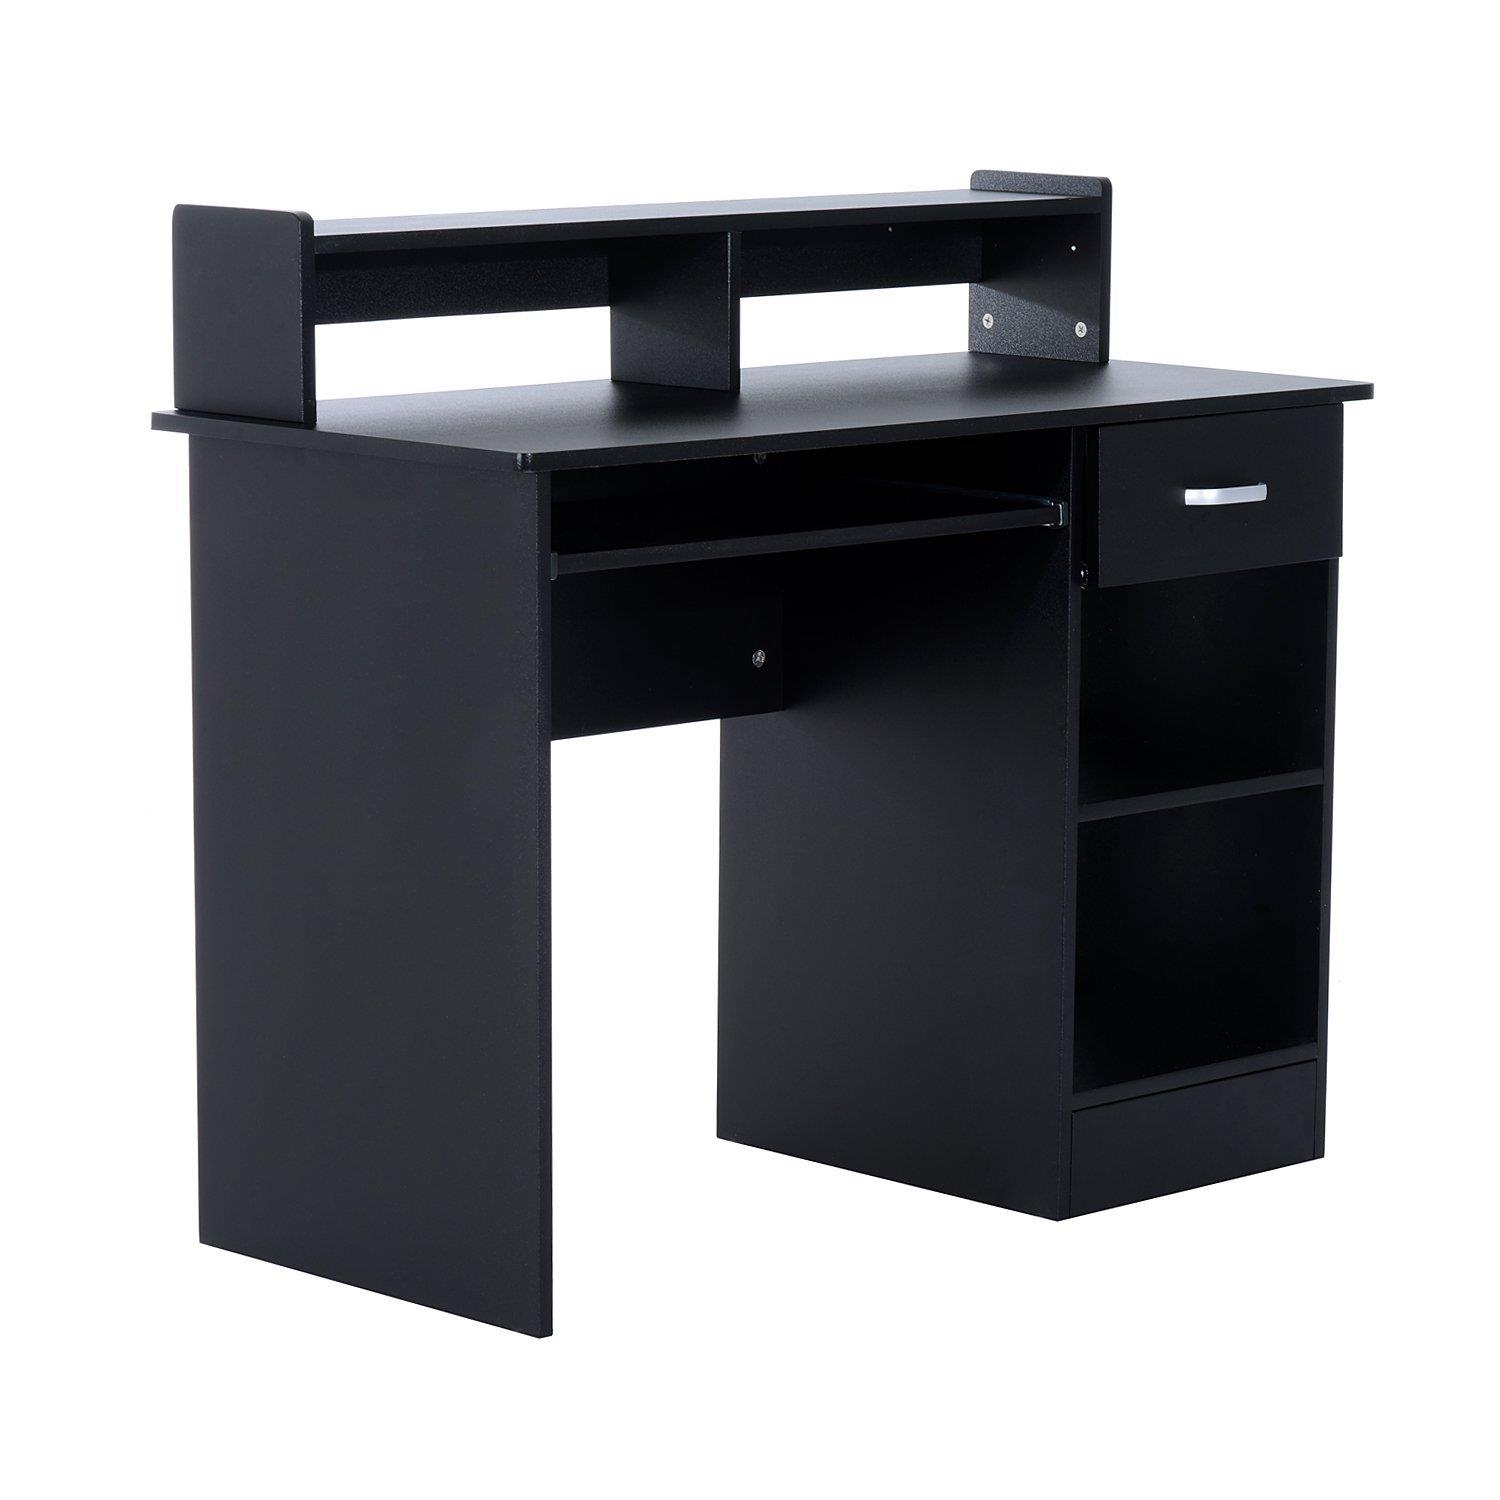 Mesa para ordenador ADEN, con Bandeja para Teclado, Dimensiones 106x50x93,5 cm, en Madera color Negro